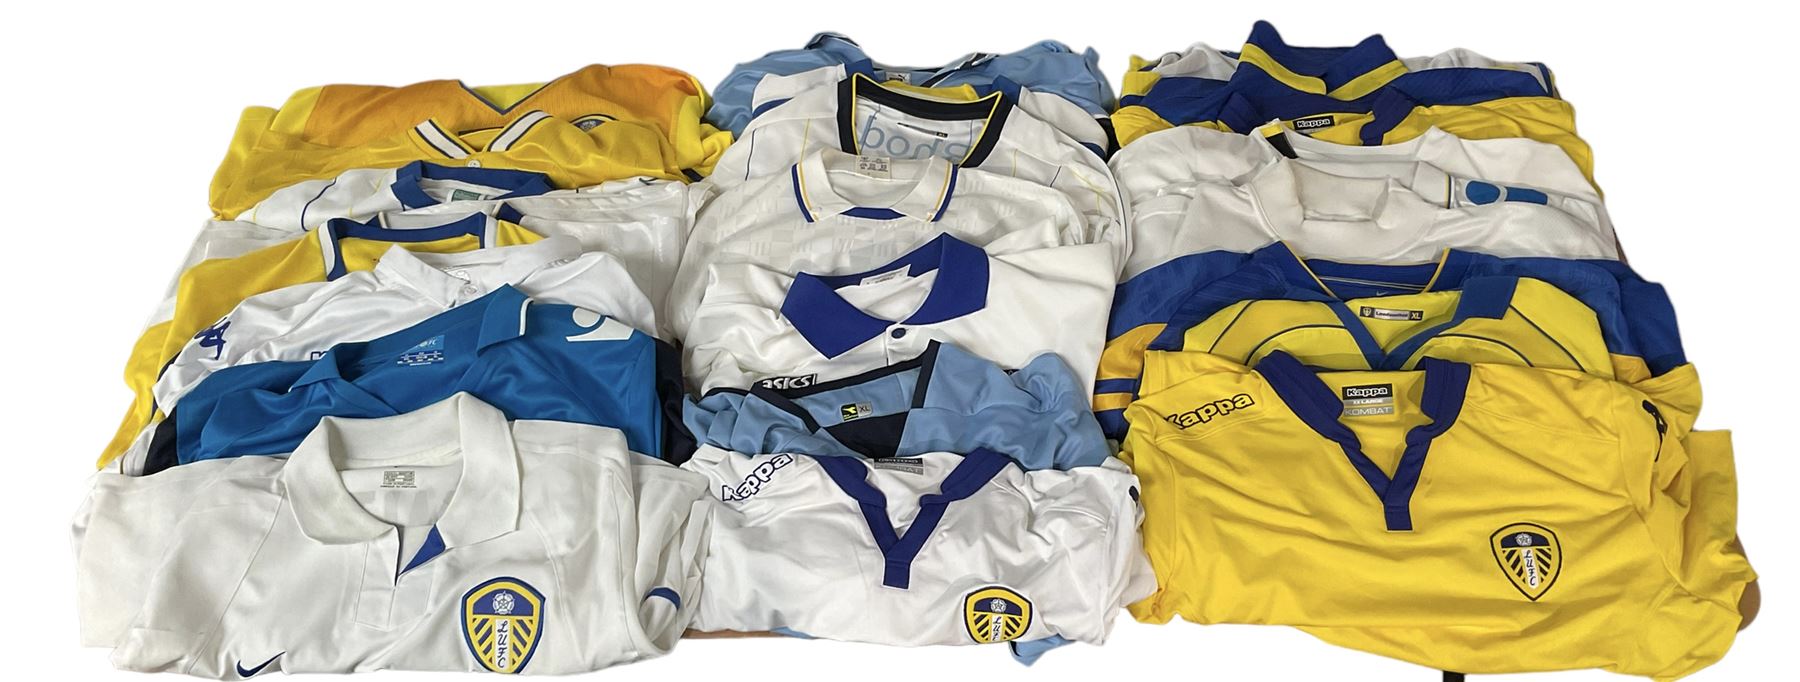 Leeds United football club - twenty-four replica shirts including home and away